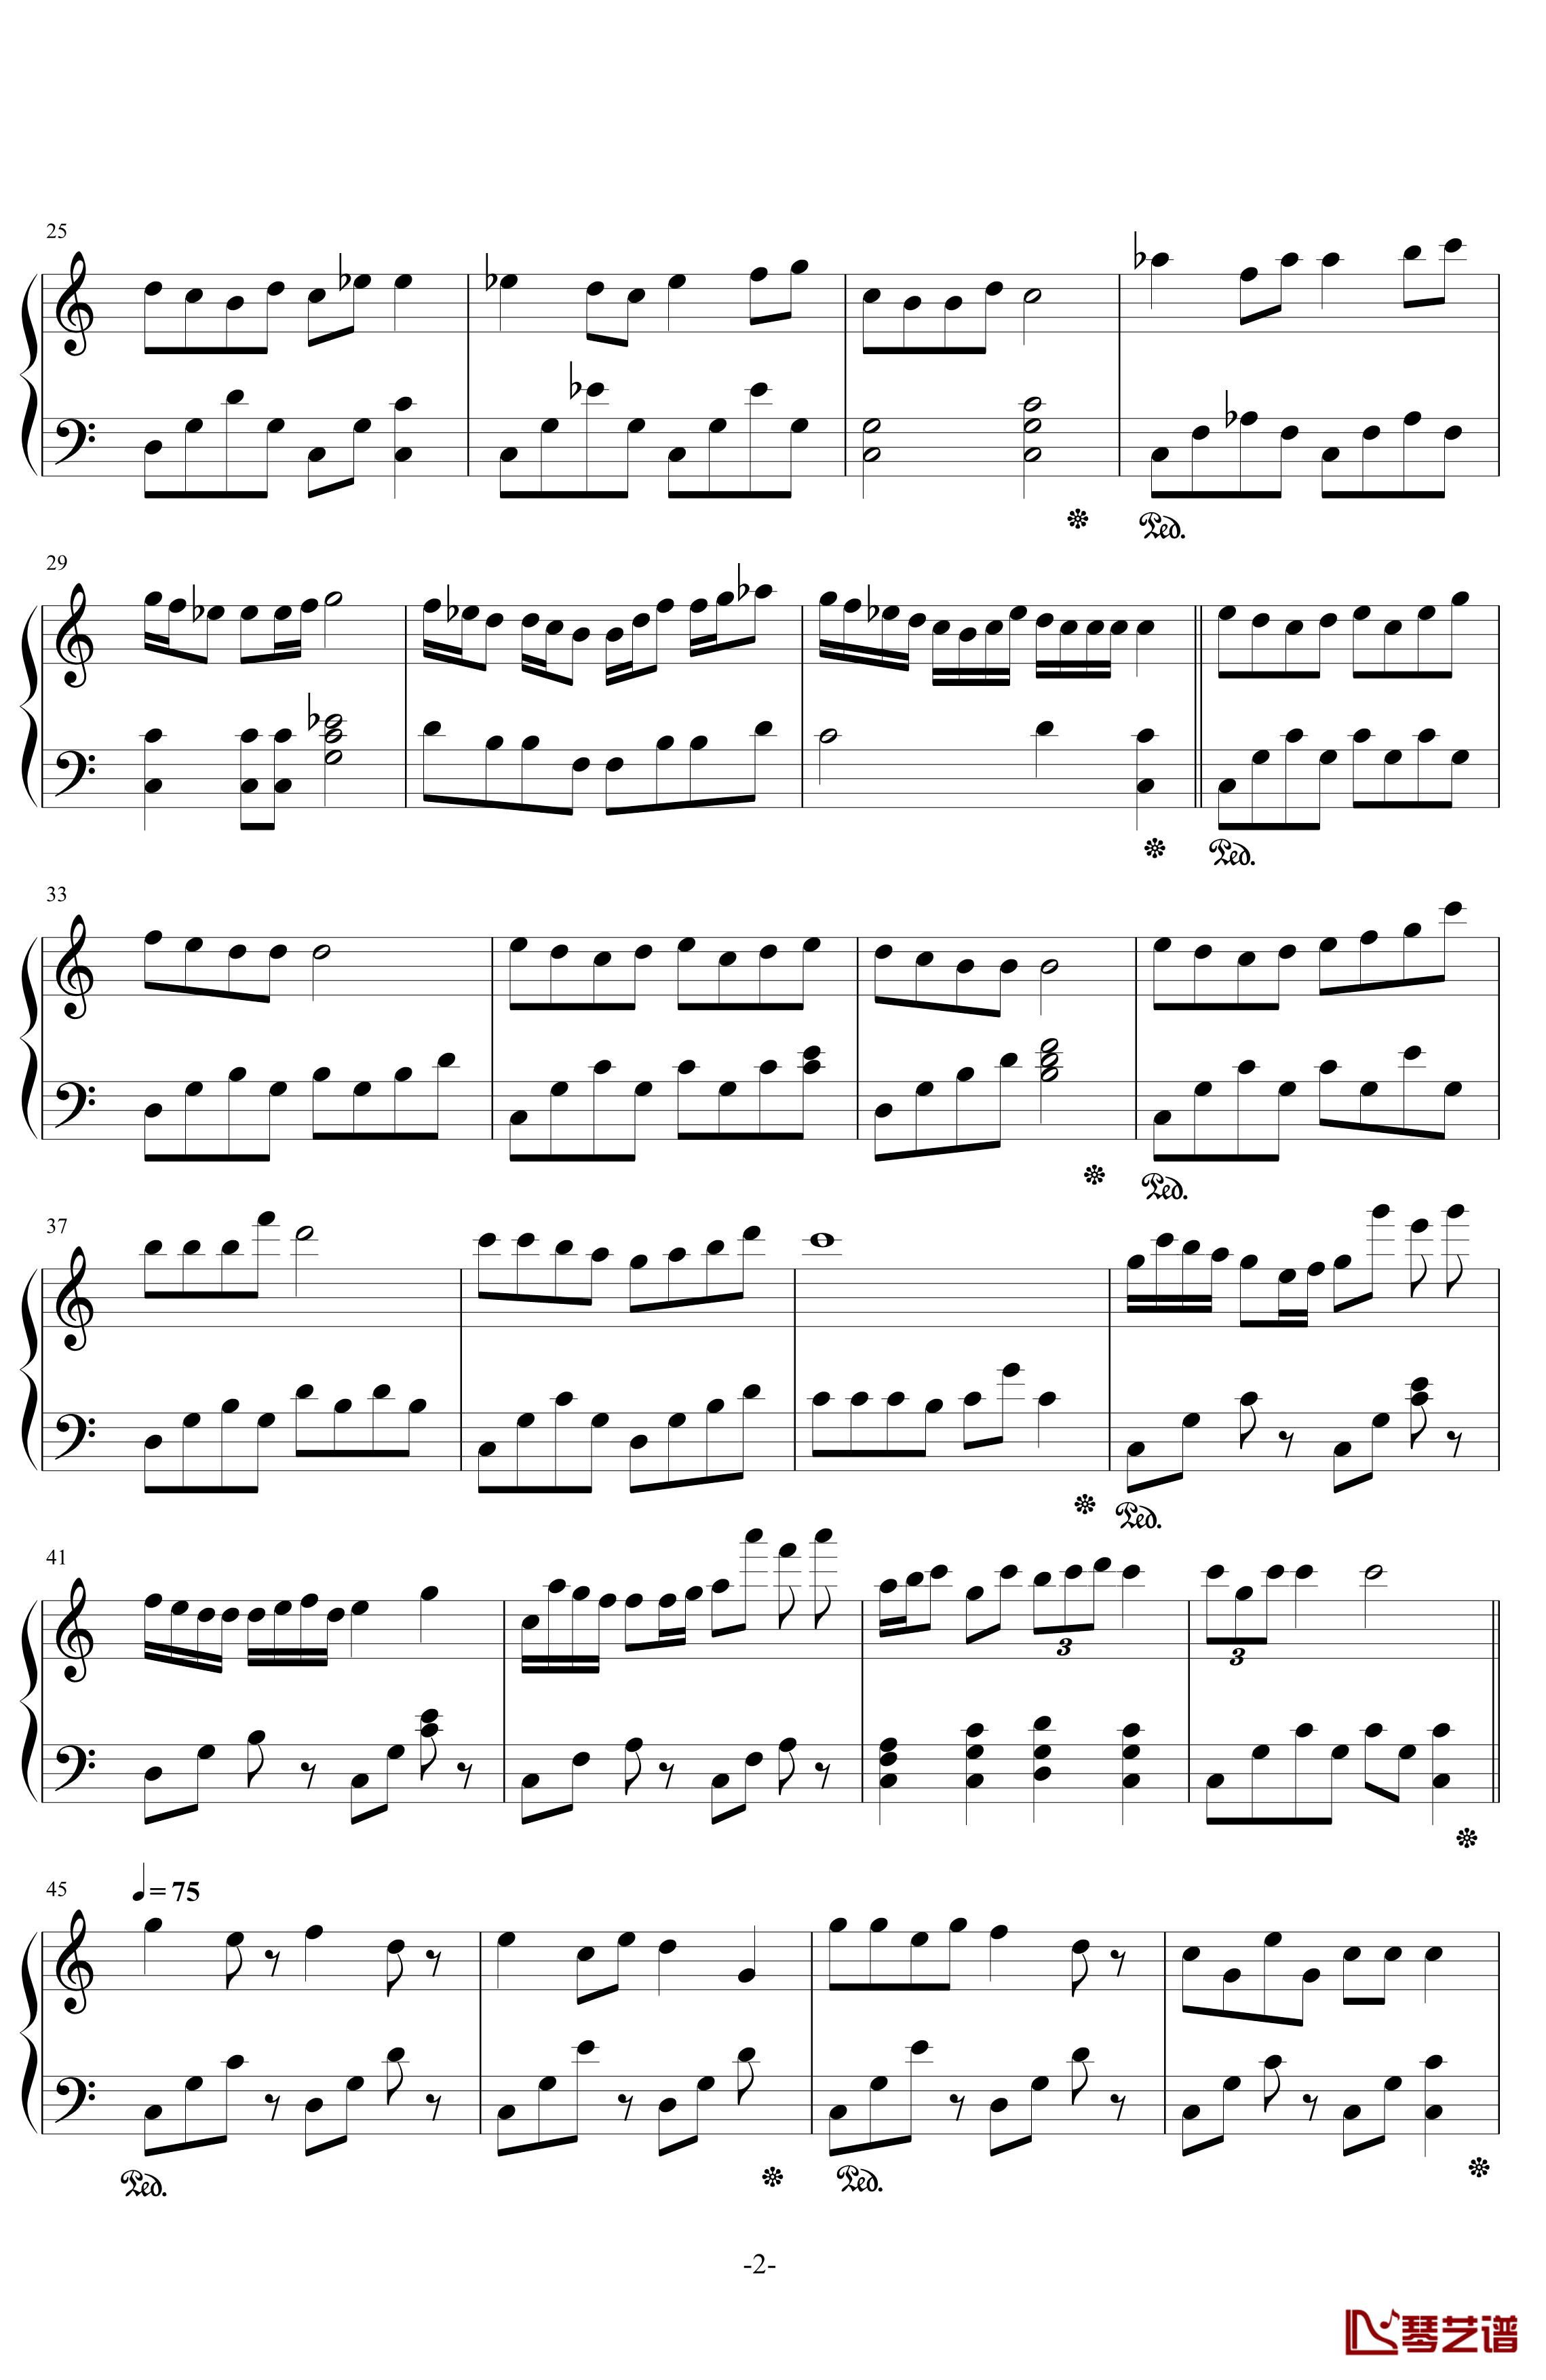 变幻奏鸣曲钢琴谱-dalixin7532